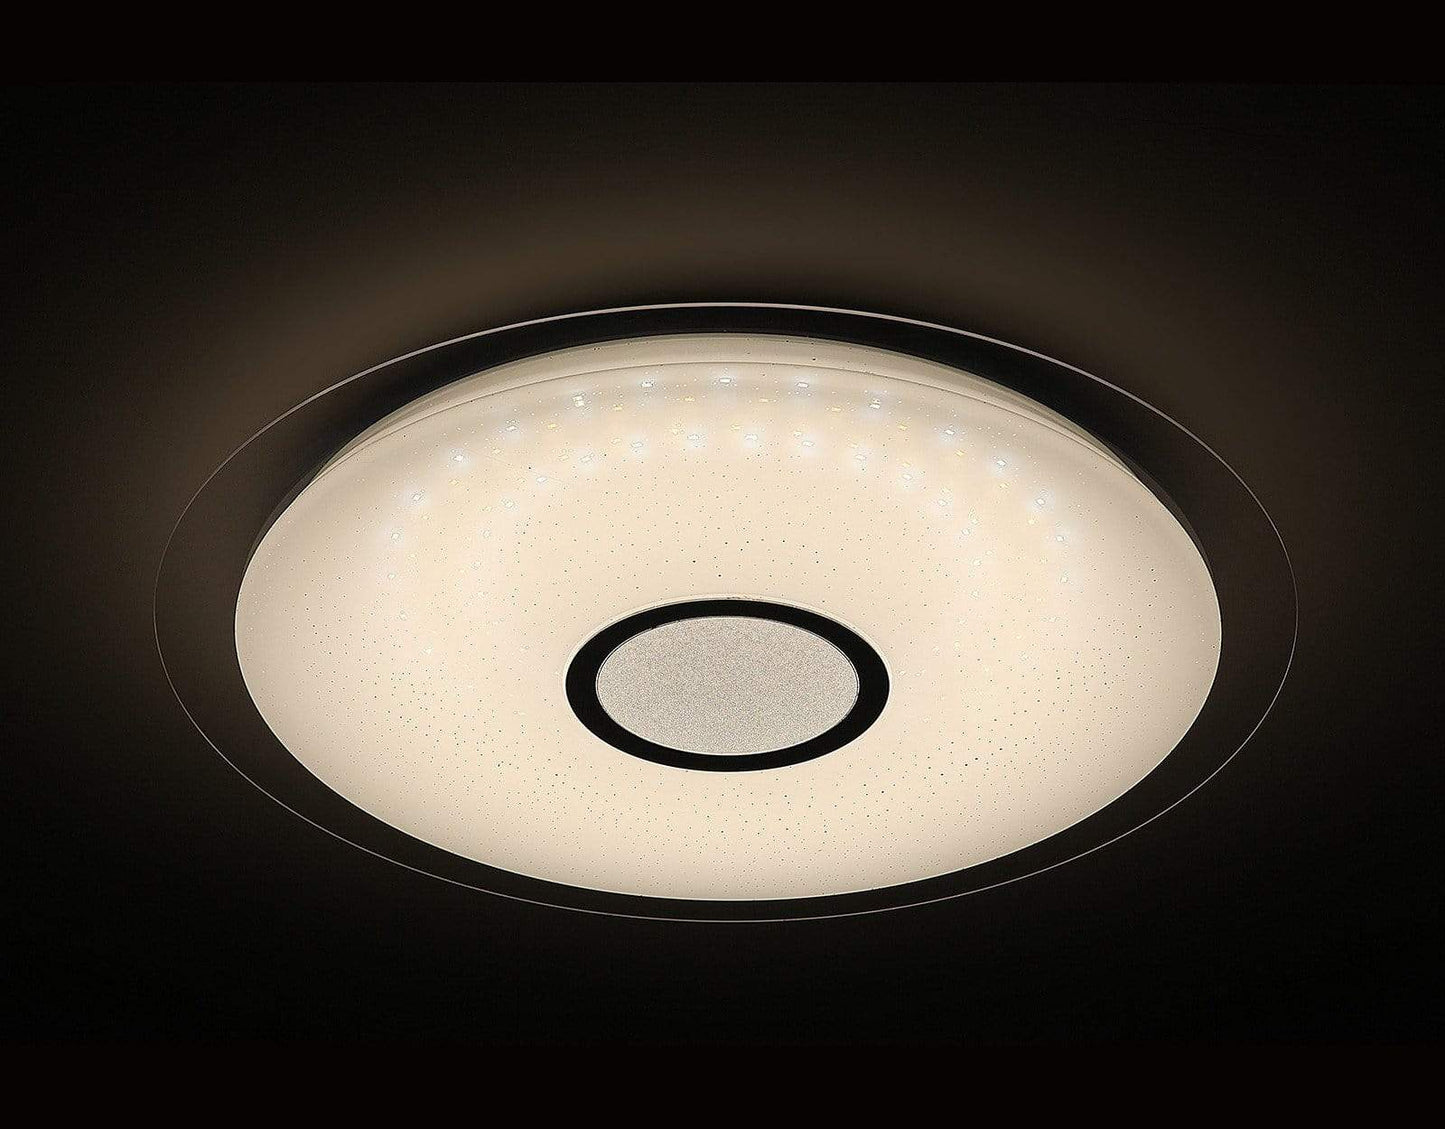 L6 Home Decore DALEN 17inch Smart RC Ceiling Light